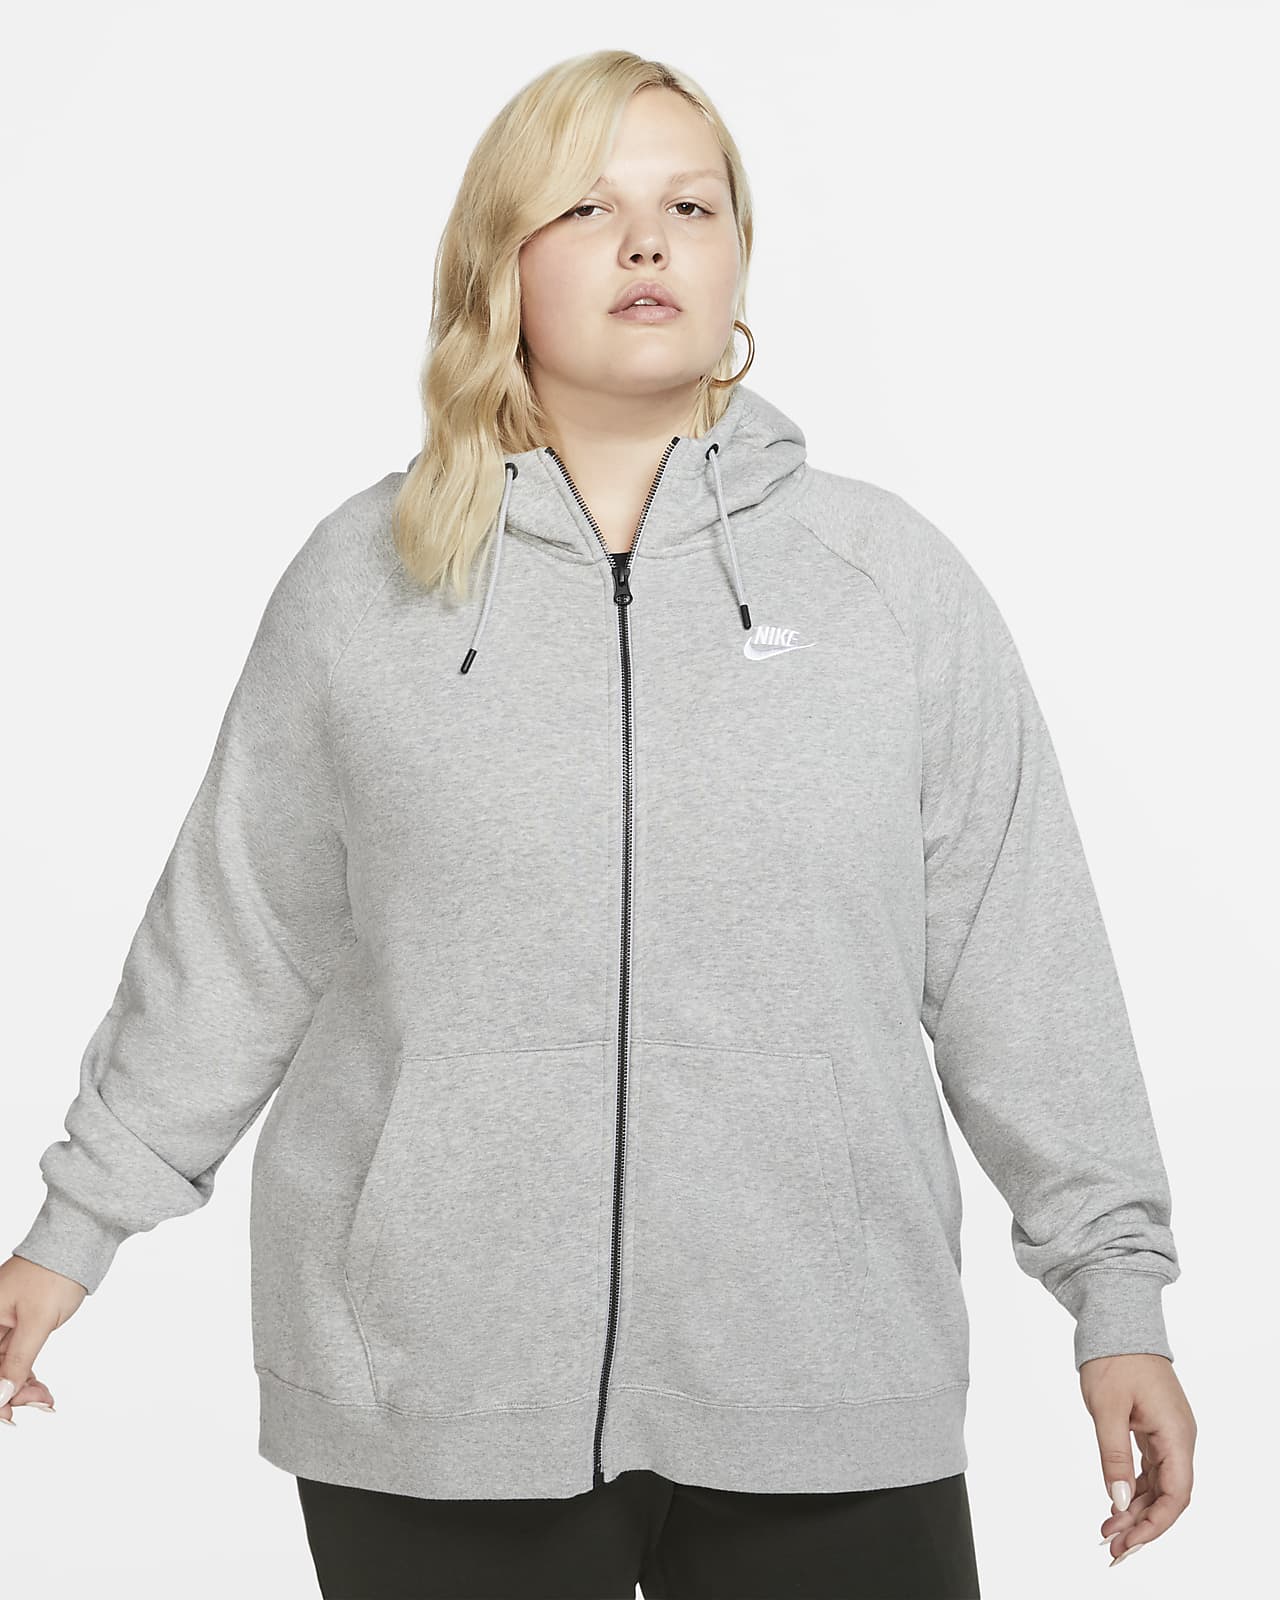 women's nike sportswear essential hoodie